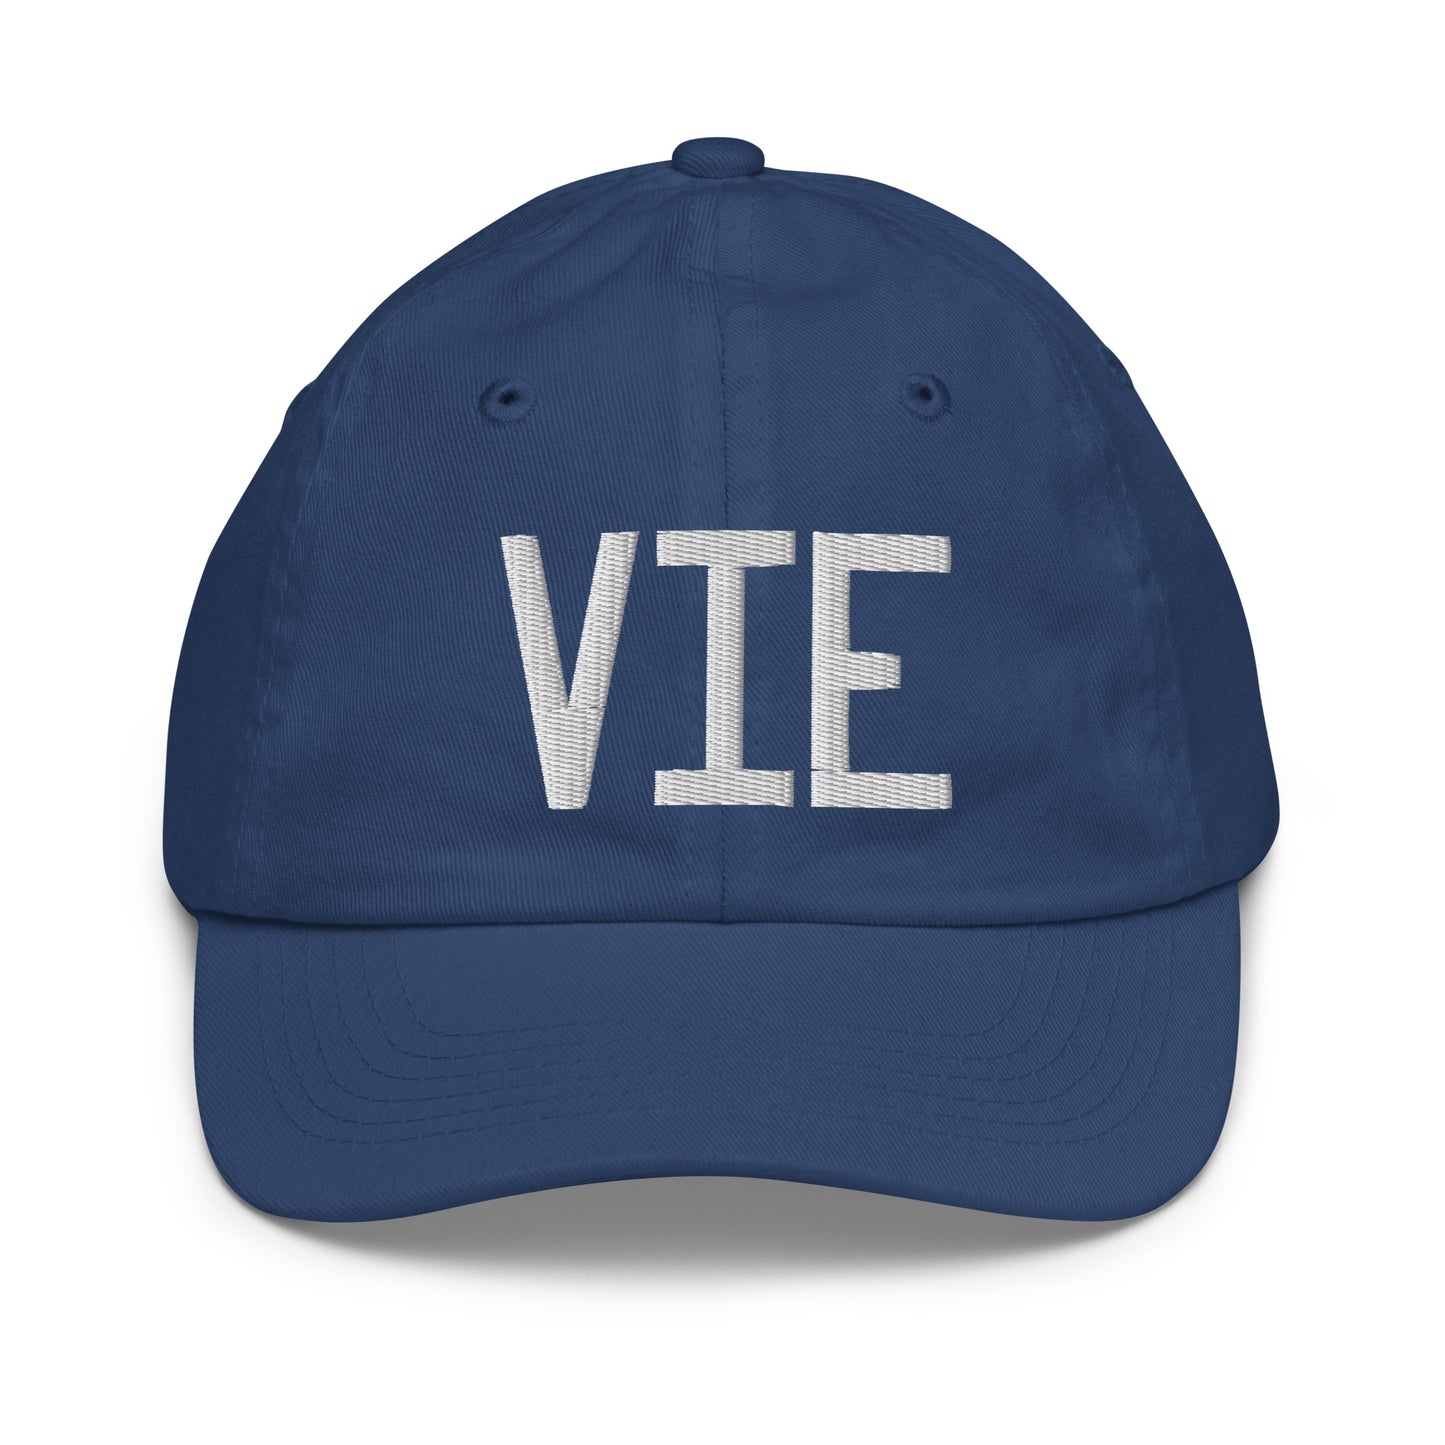 Airport Code Kid's Baseball Cap - White • VIE Vienna • YHM Designs - Image 20